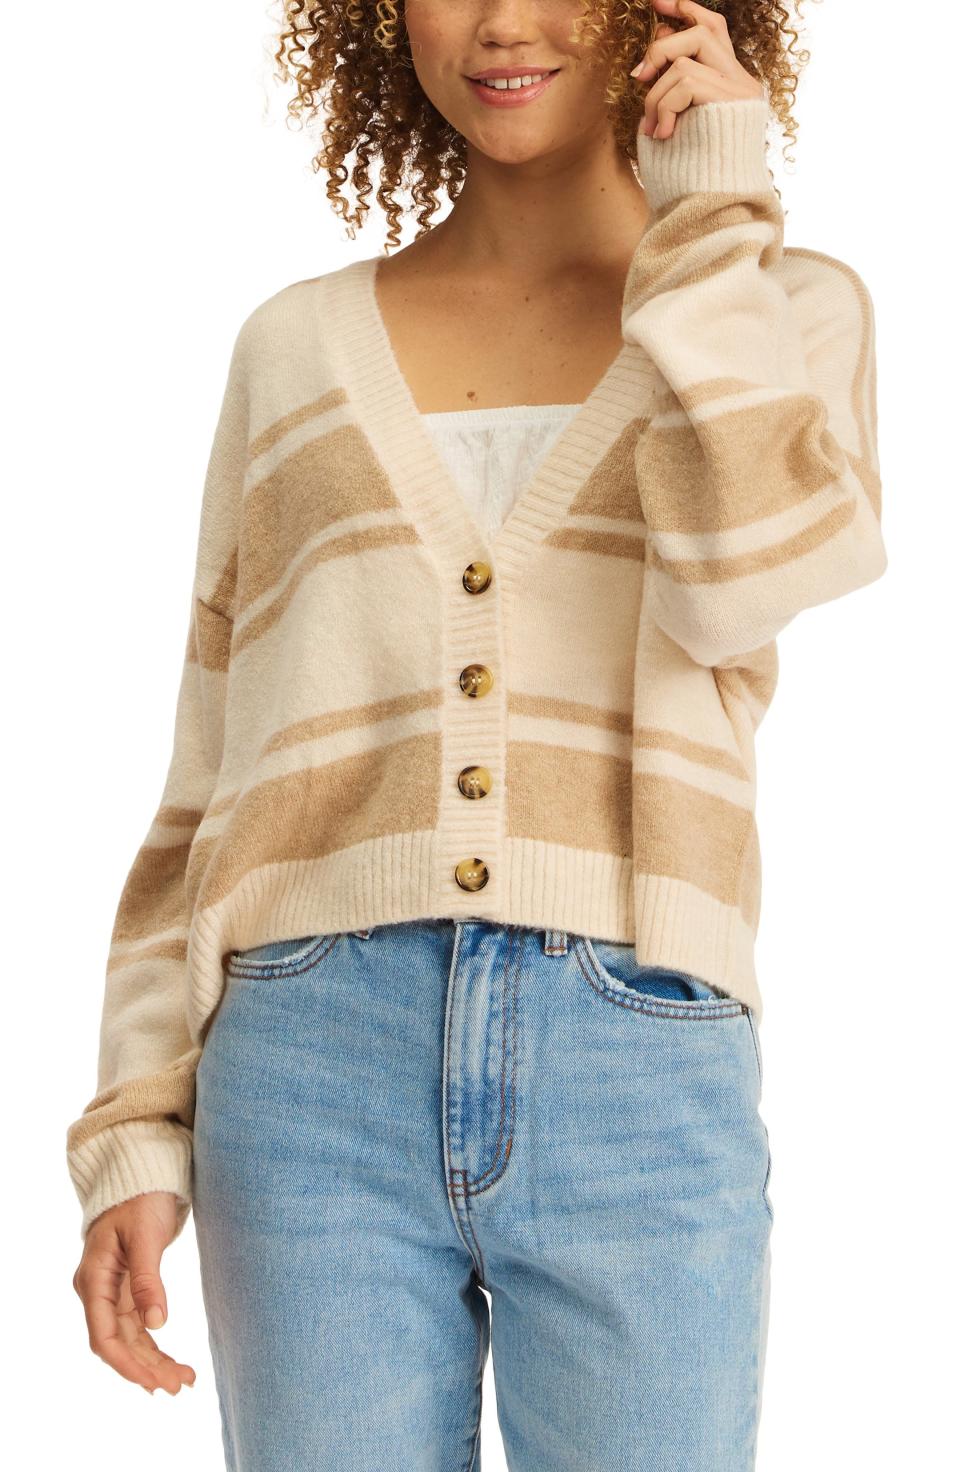 5) Sunrise Stripe Cardigan Sweater